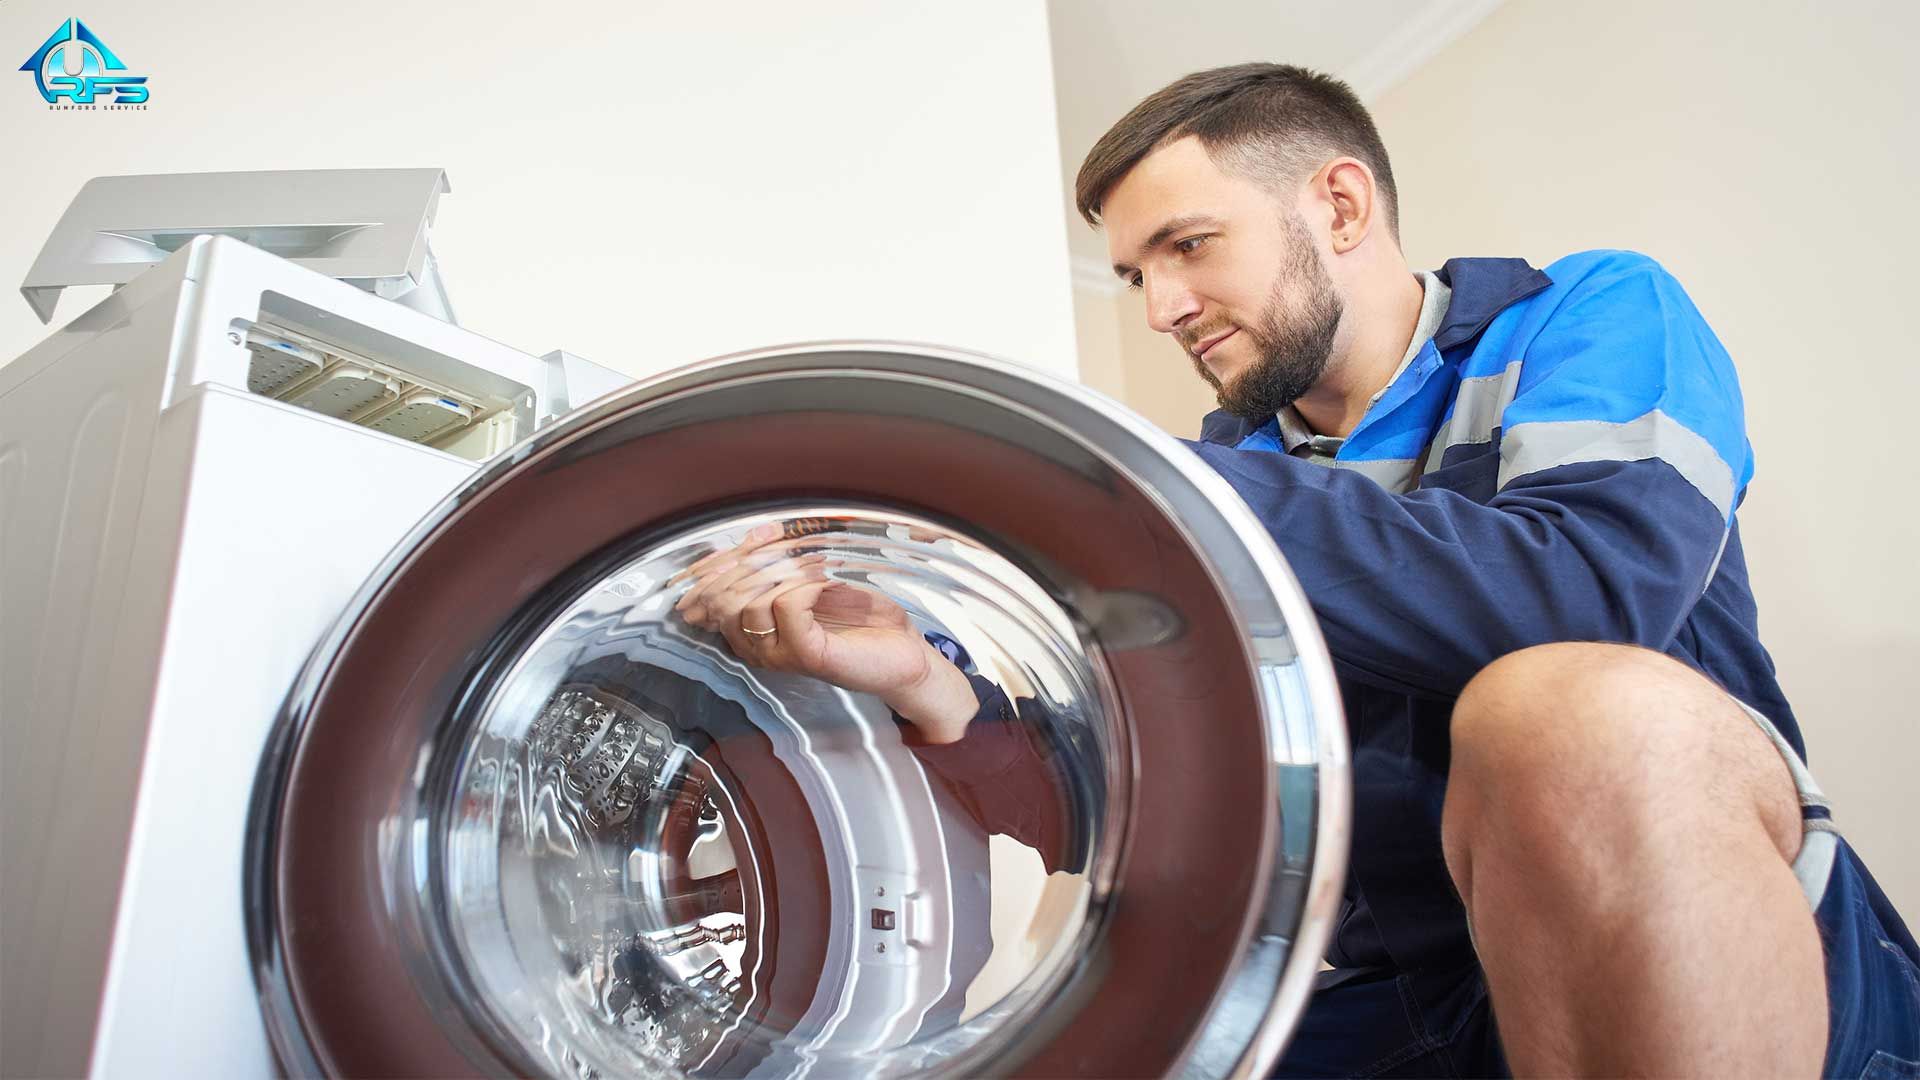 رامفورد سرویس کلیه ی خدمات مربوط به نصب و تعمیر لوازم خانگی خصوصا تعمیر ماشین لباسشویی را به نحو احسن برای شما انجام میدهد.